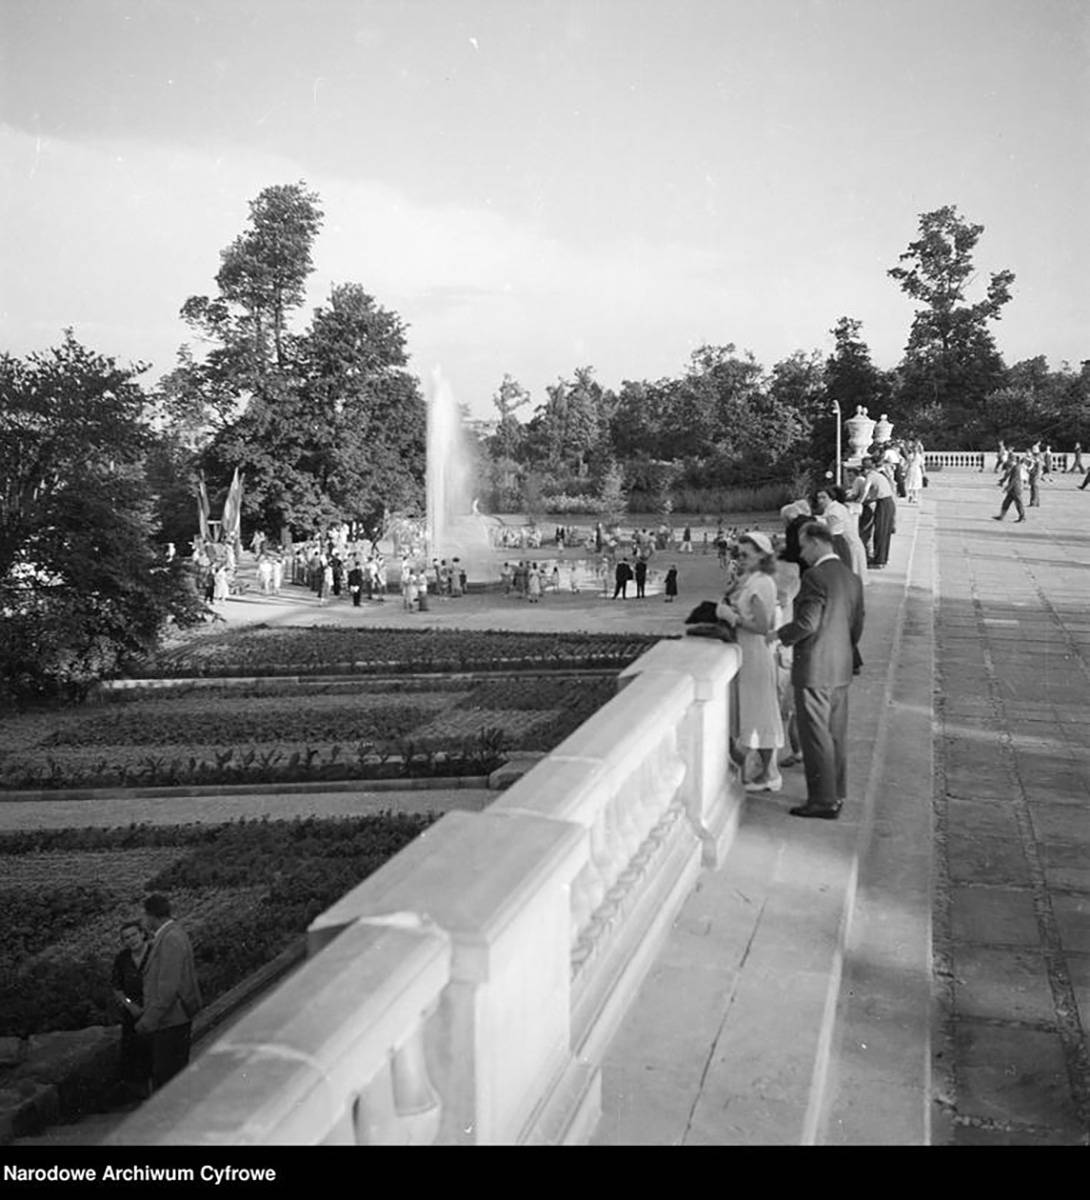 Fontanna w Centralnym Parku Kultury i Wypoczynku w Warszawie, fot. Zbyszko Siemaszko, 1955, Narodowe Archiwum Cyfrowe, NAC 51-860-2